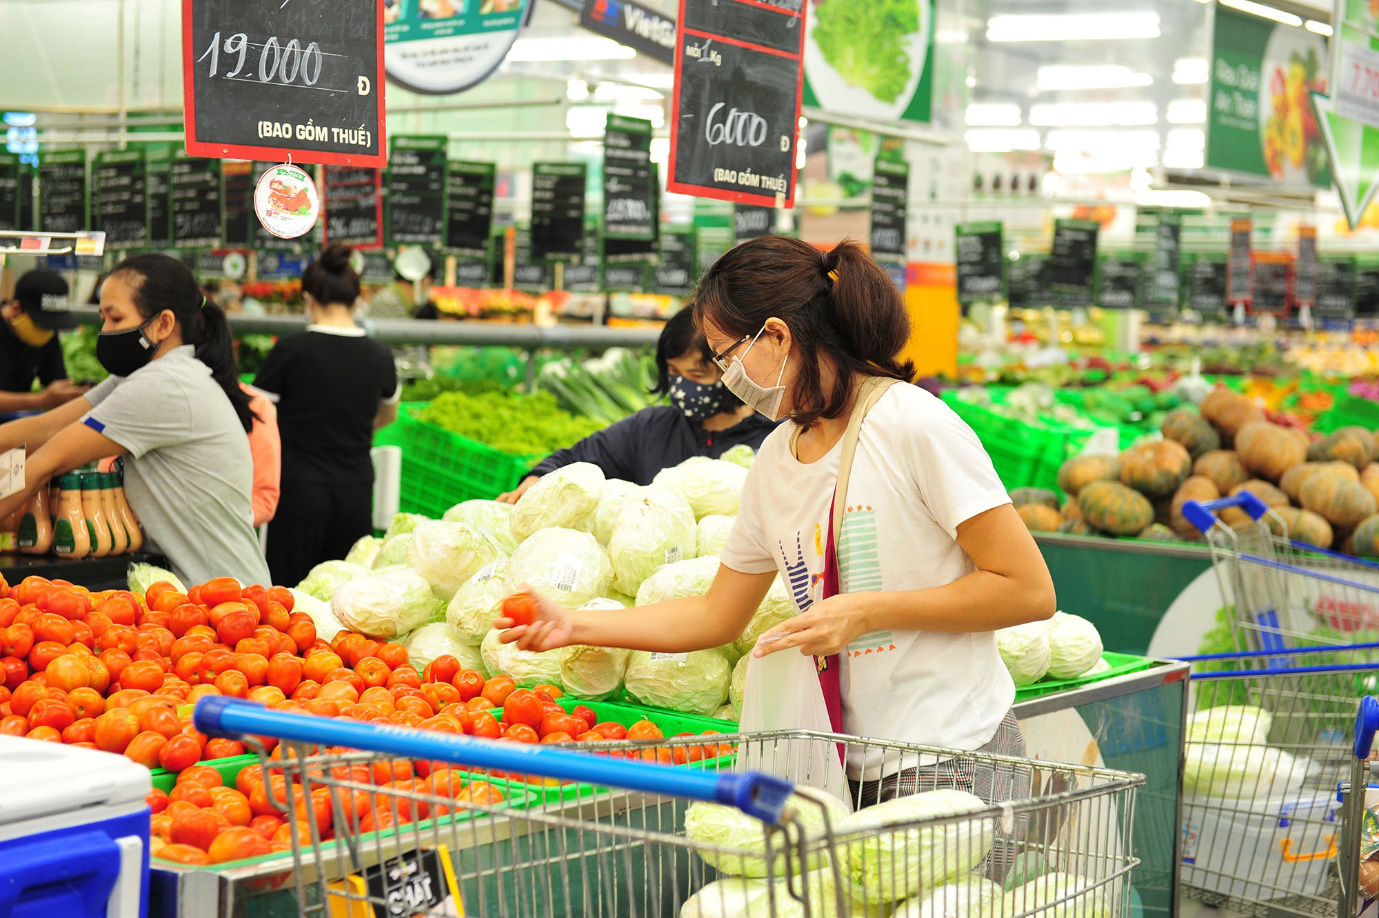 Dịch COVID-19 thay đổi thói quen mua sắm của người tiêu dùng - Ảnh 2.